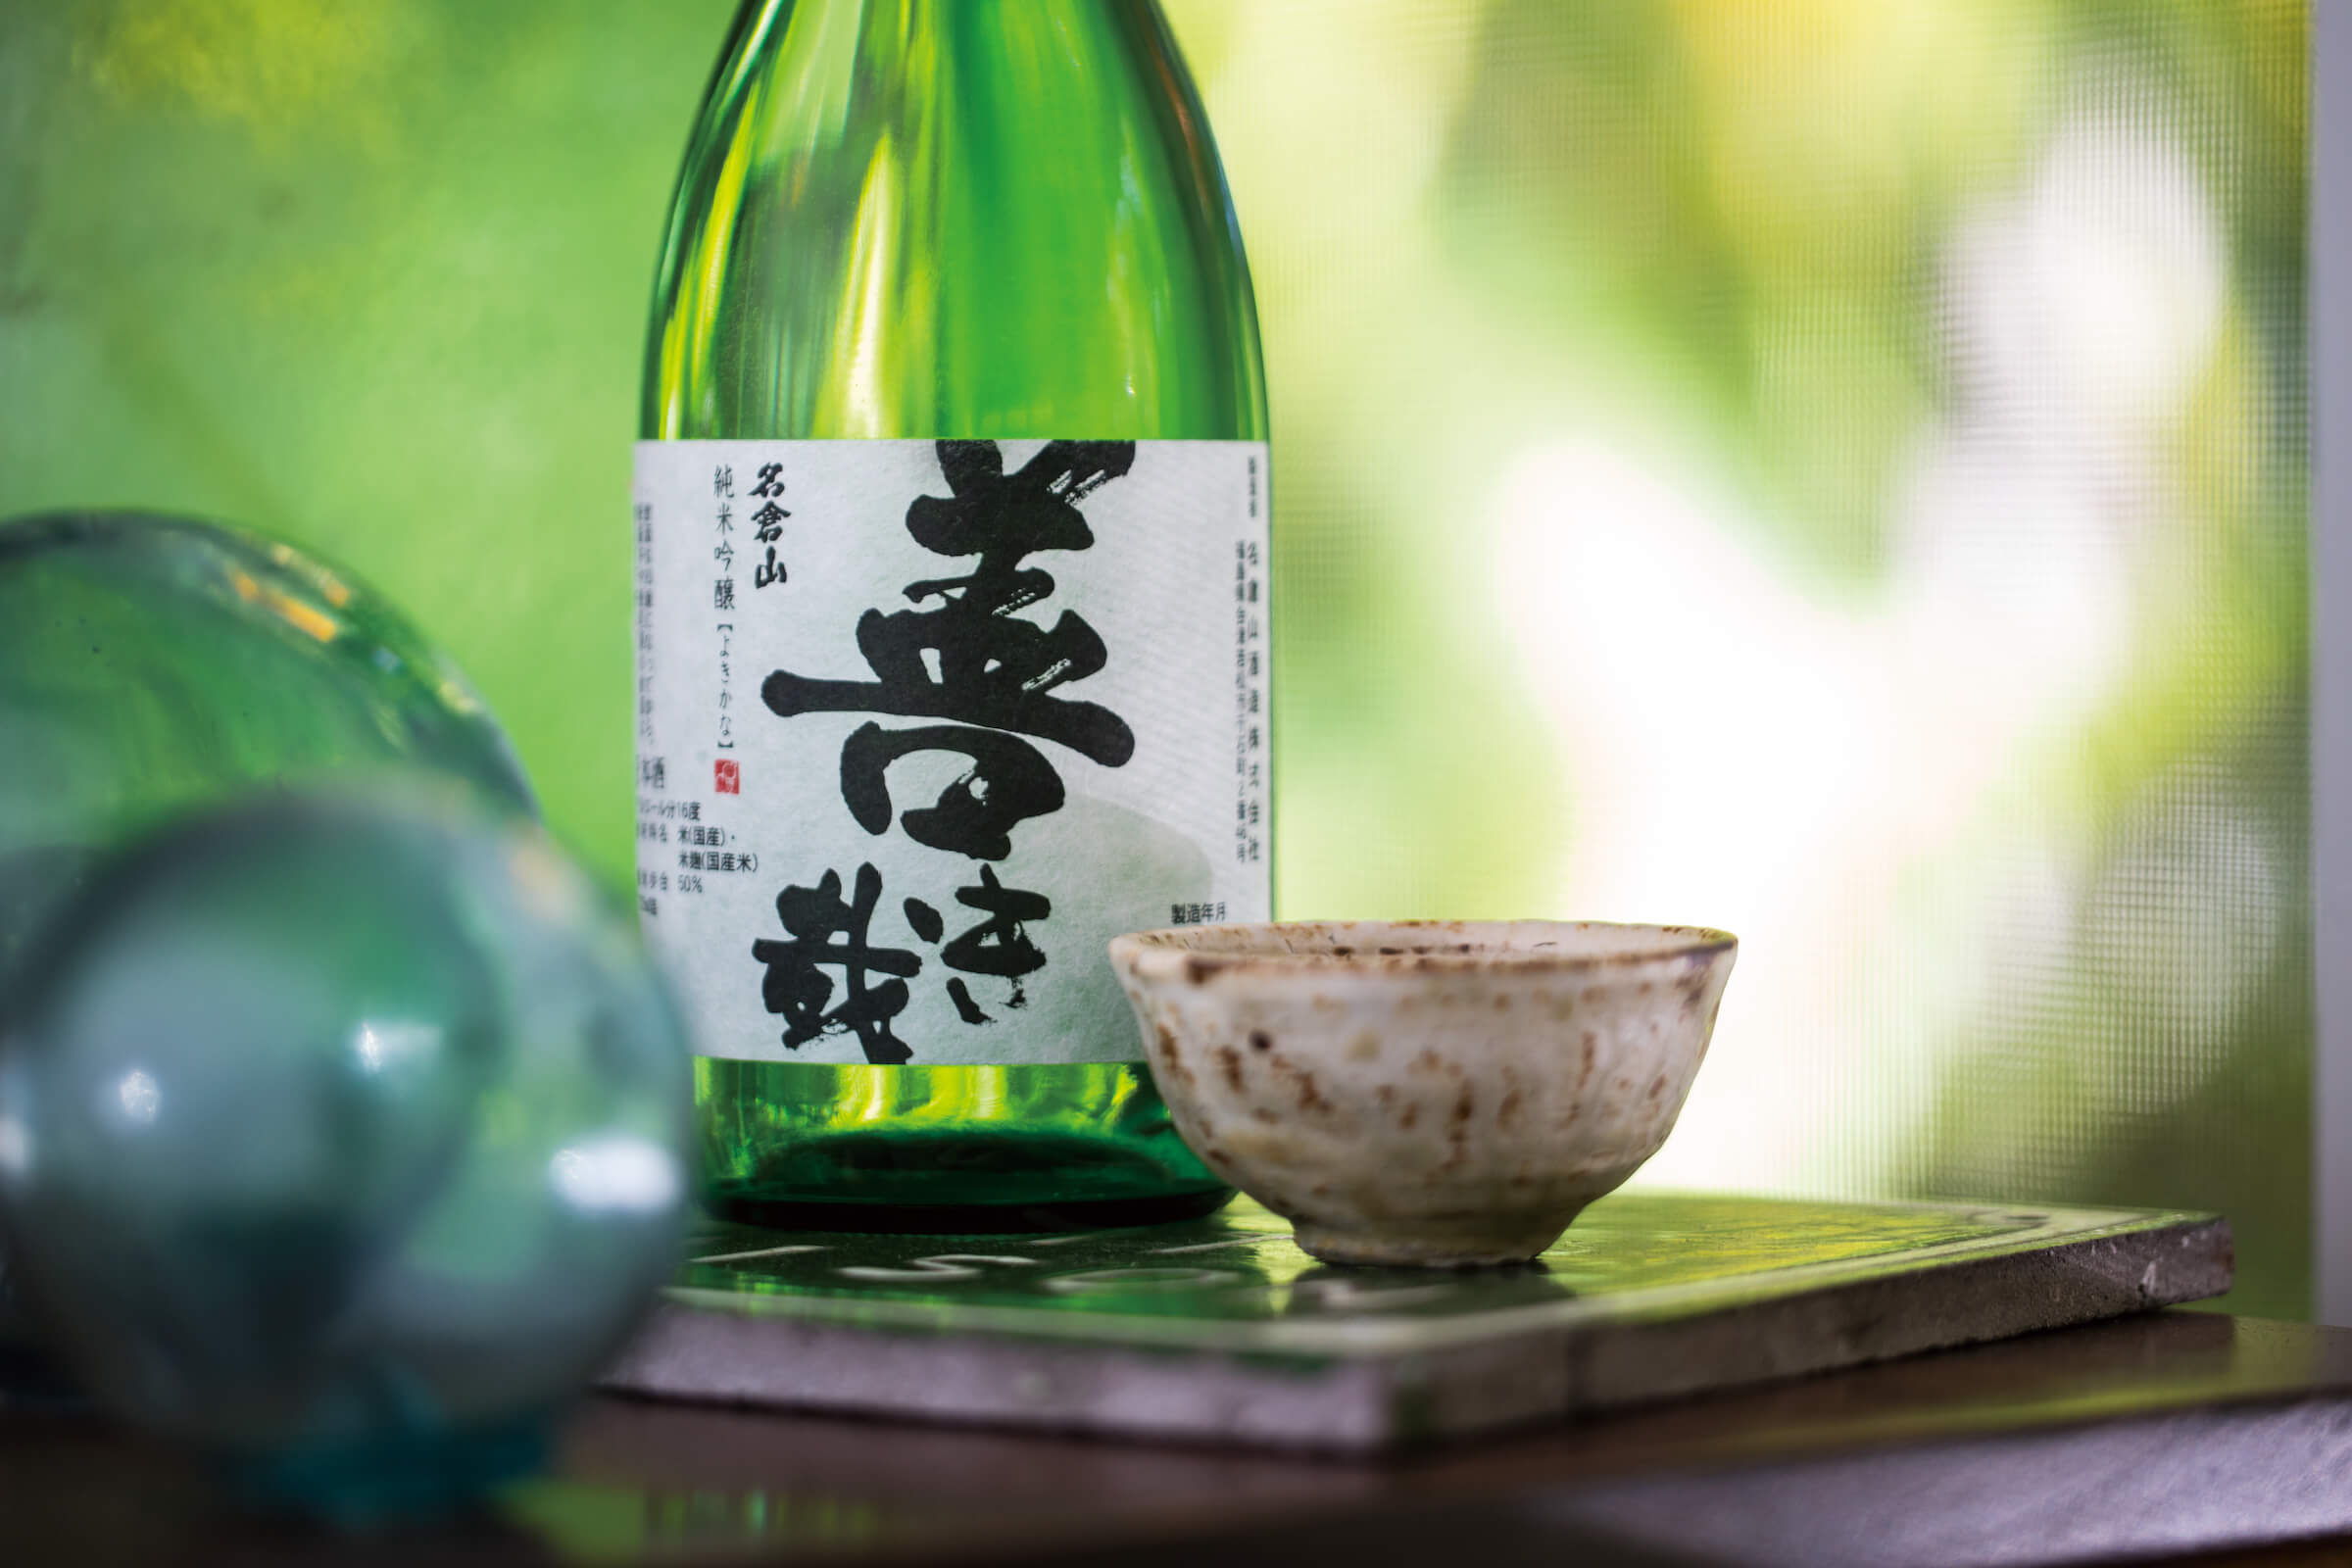 Nagurayama “Yokikana” bottle